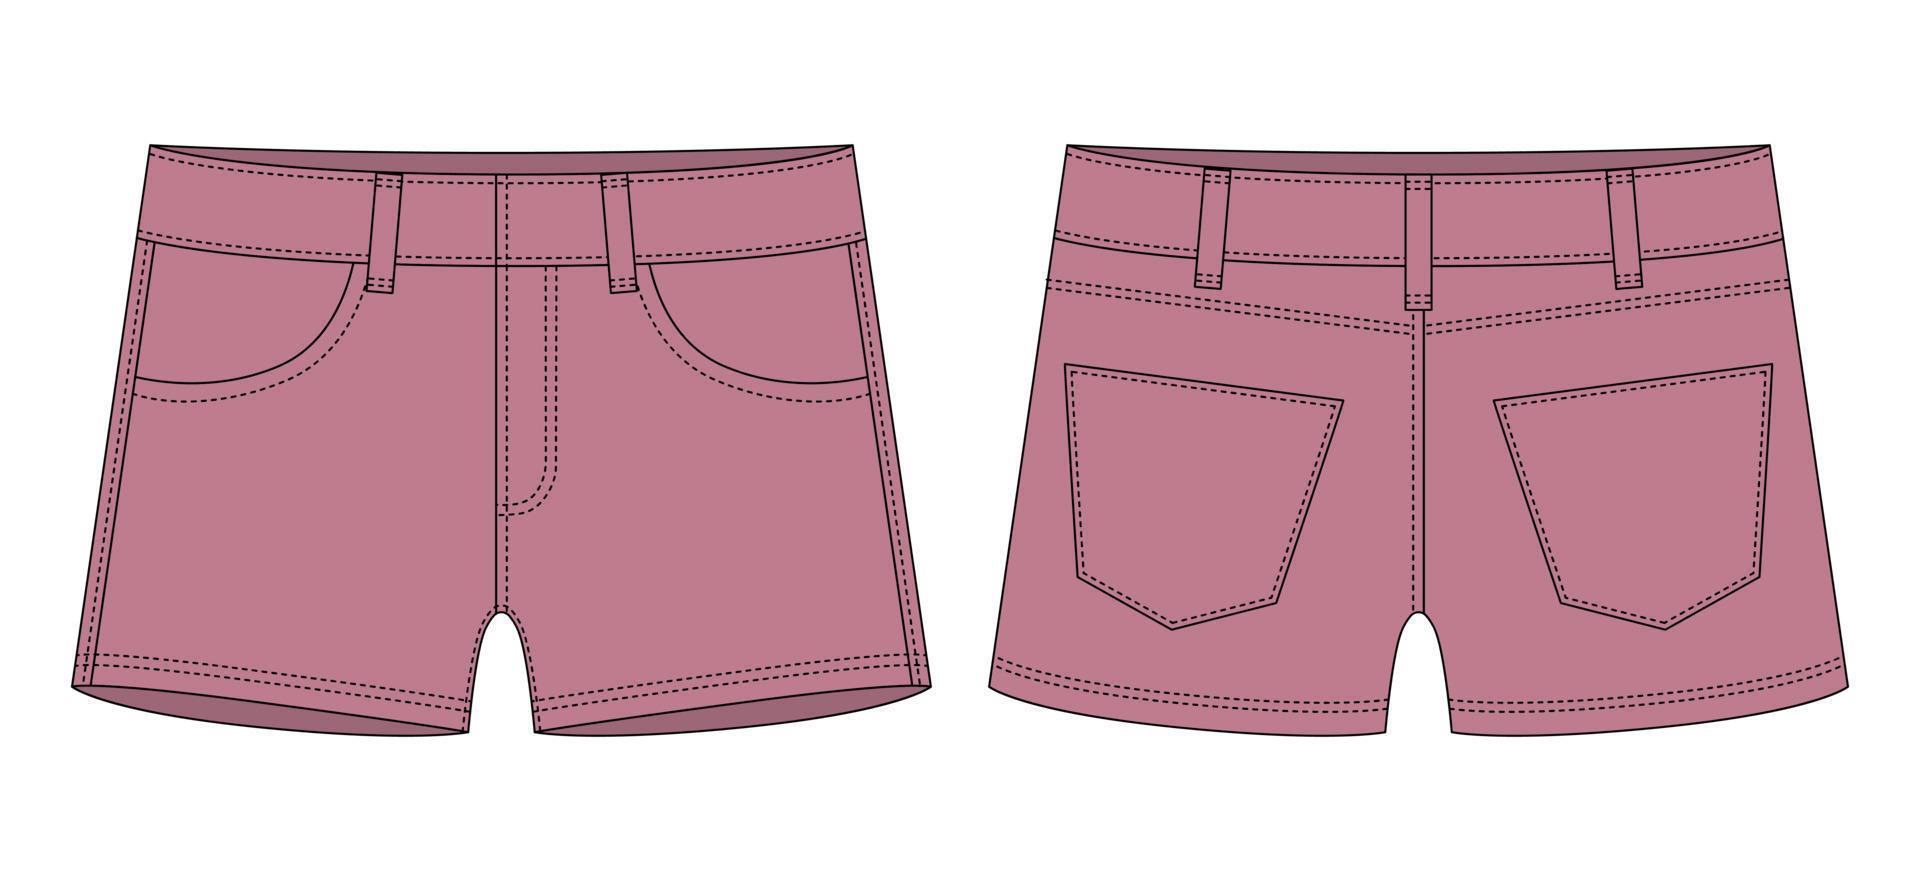 Denim-Shorts mit Taschen technische Skizze. Pudra-Farbe. Designvorlage für Kinder-Jeans-Shorts. vektor